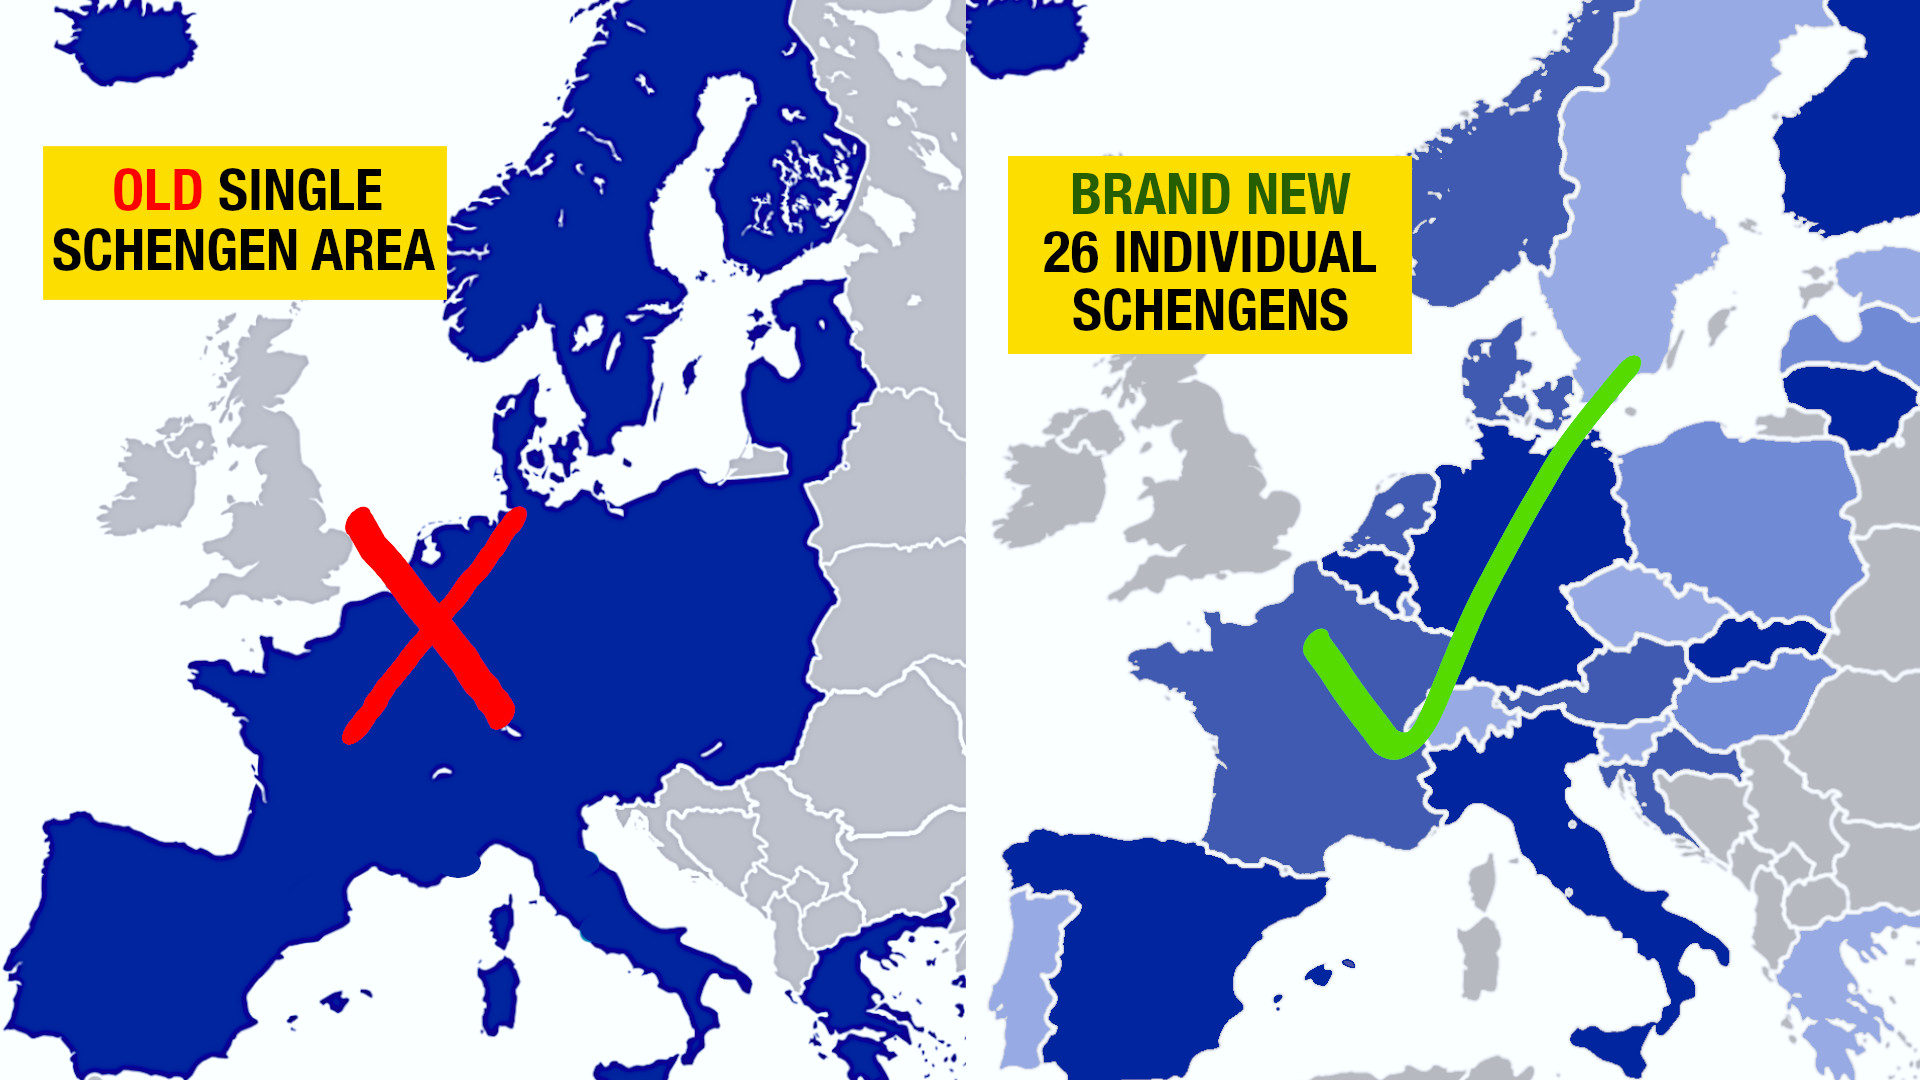 New Schengen area - 26 individual Schengens